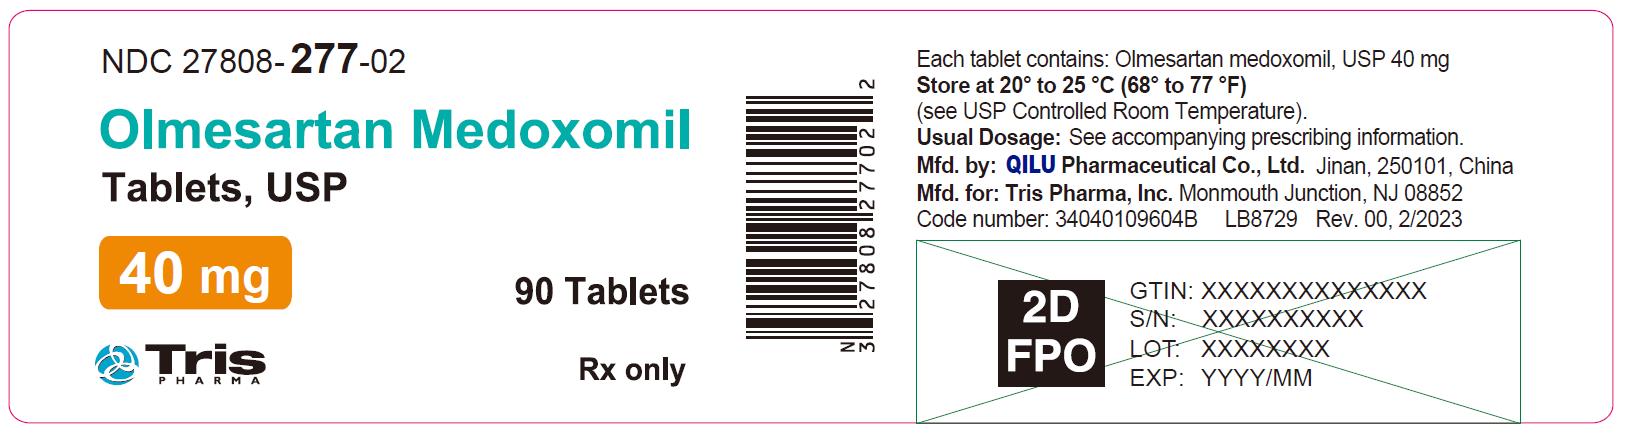 Olmesartan Medoxomil Tablets 40 mg Bottle Label - 90 Tablets